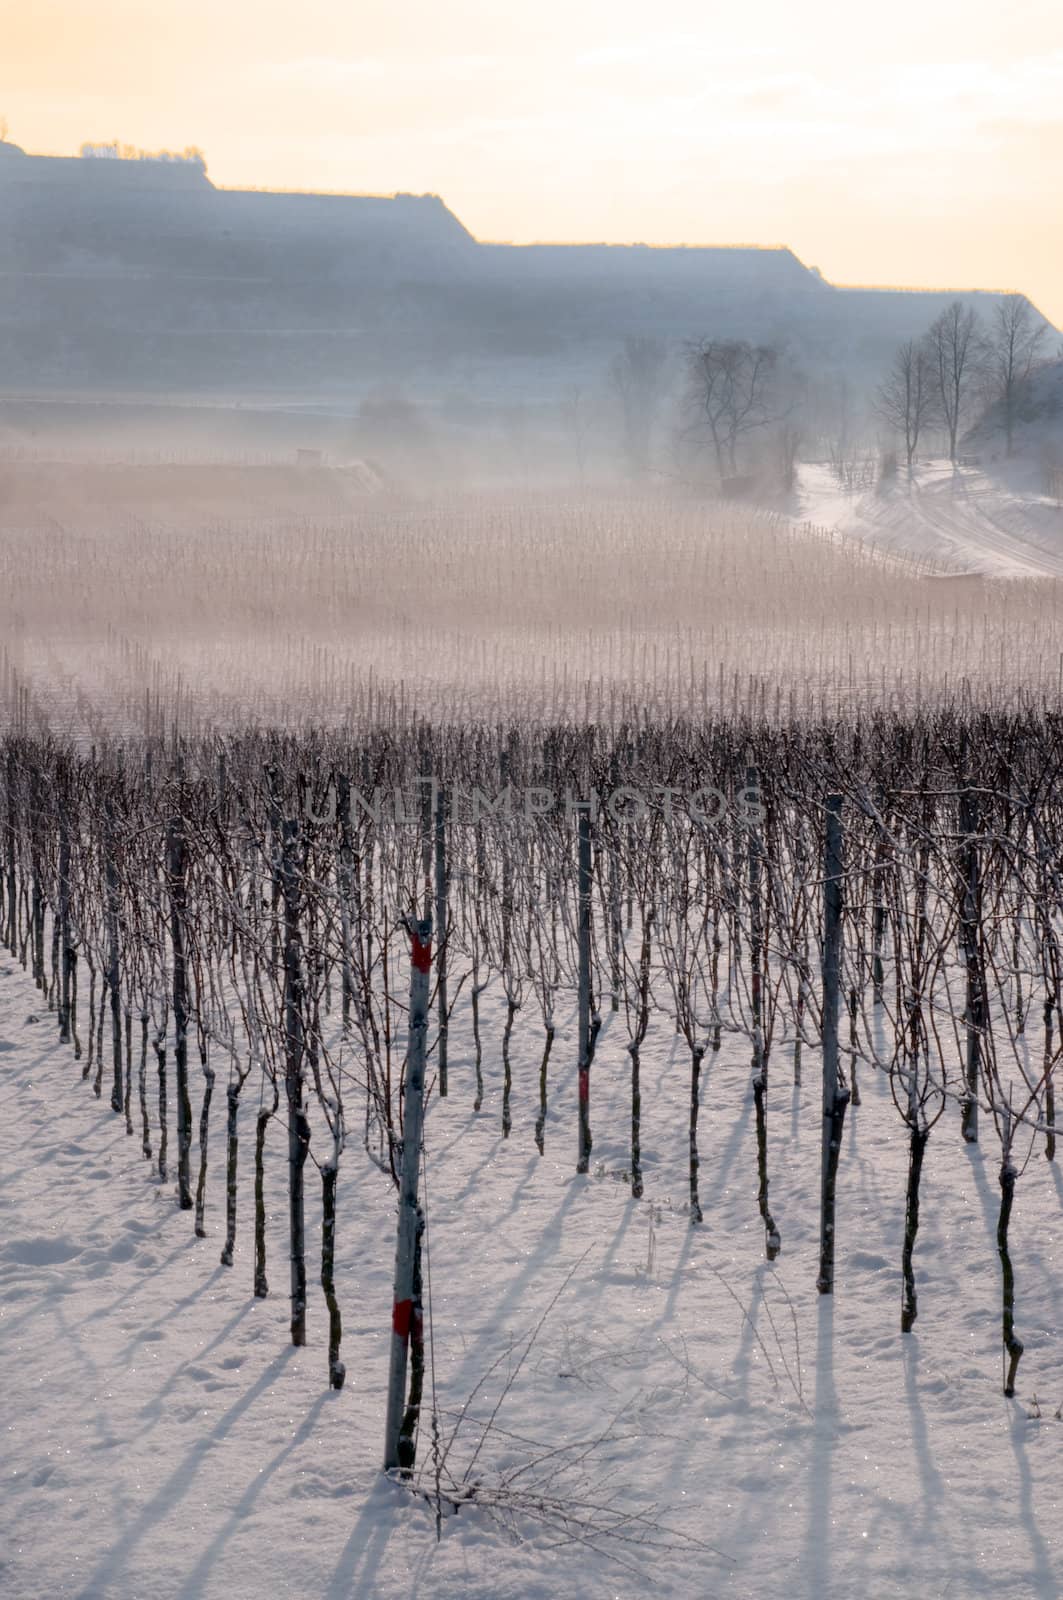 Vineyard landscape in winter by Rainman